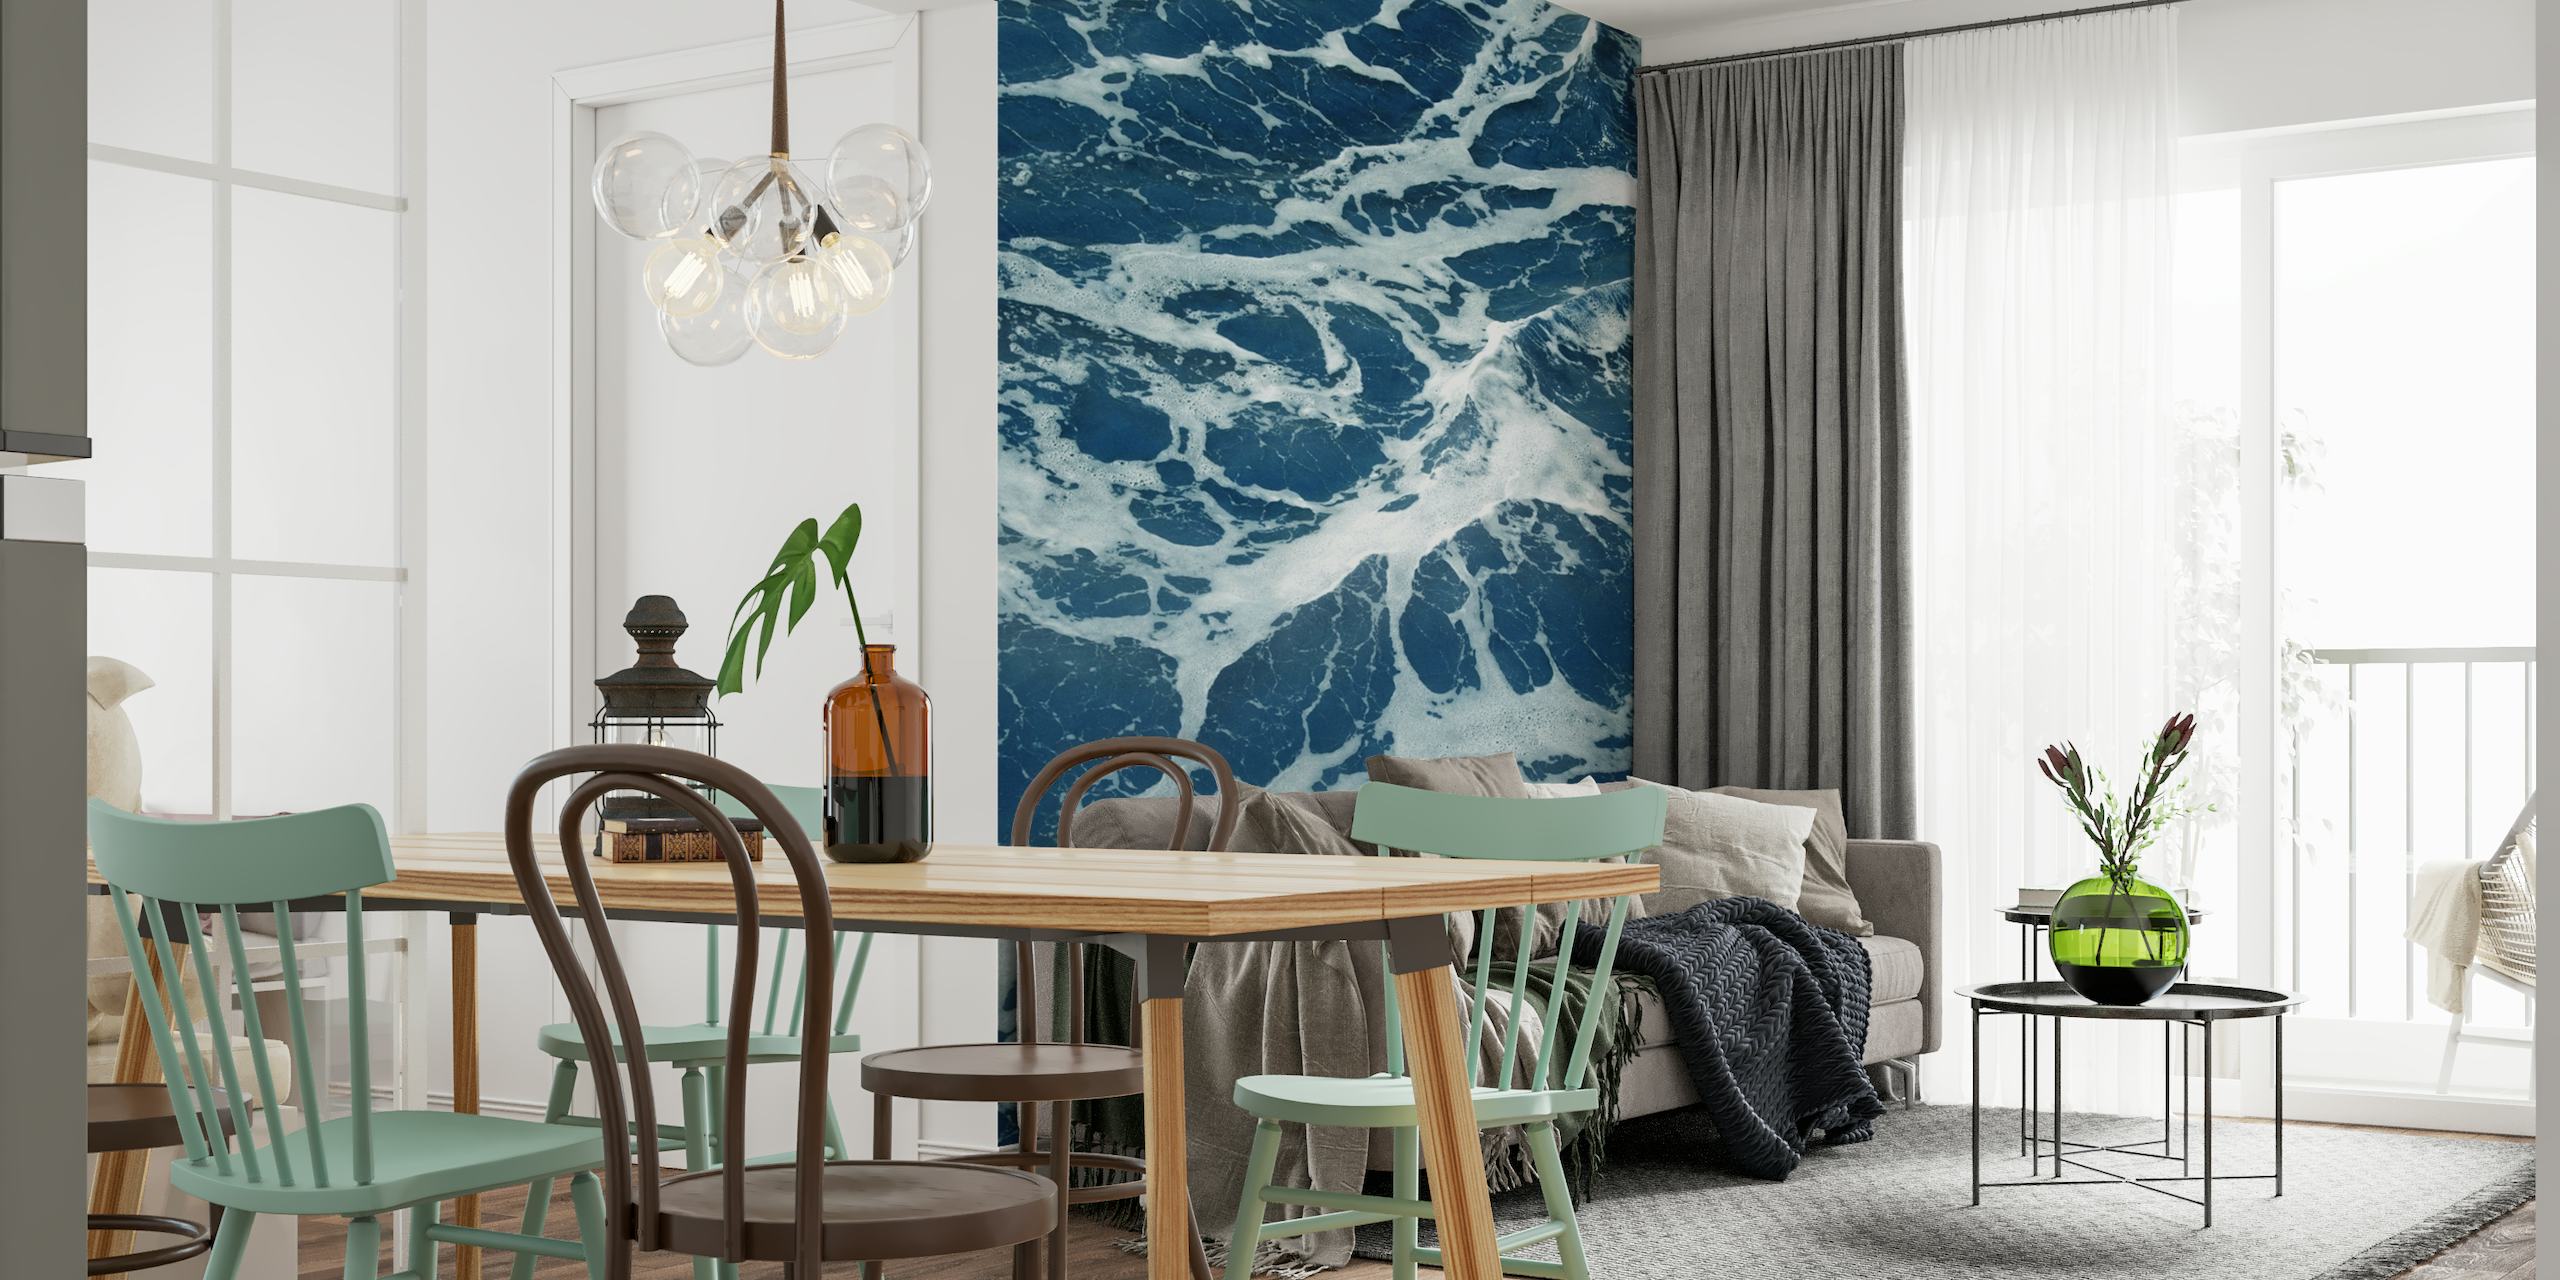 Wandbehang met golven van de Atlantische Oceaan met schuimig wit zeeschuim op diepblauw water.